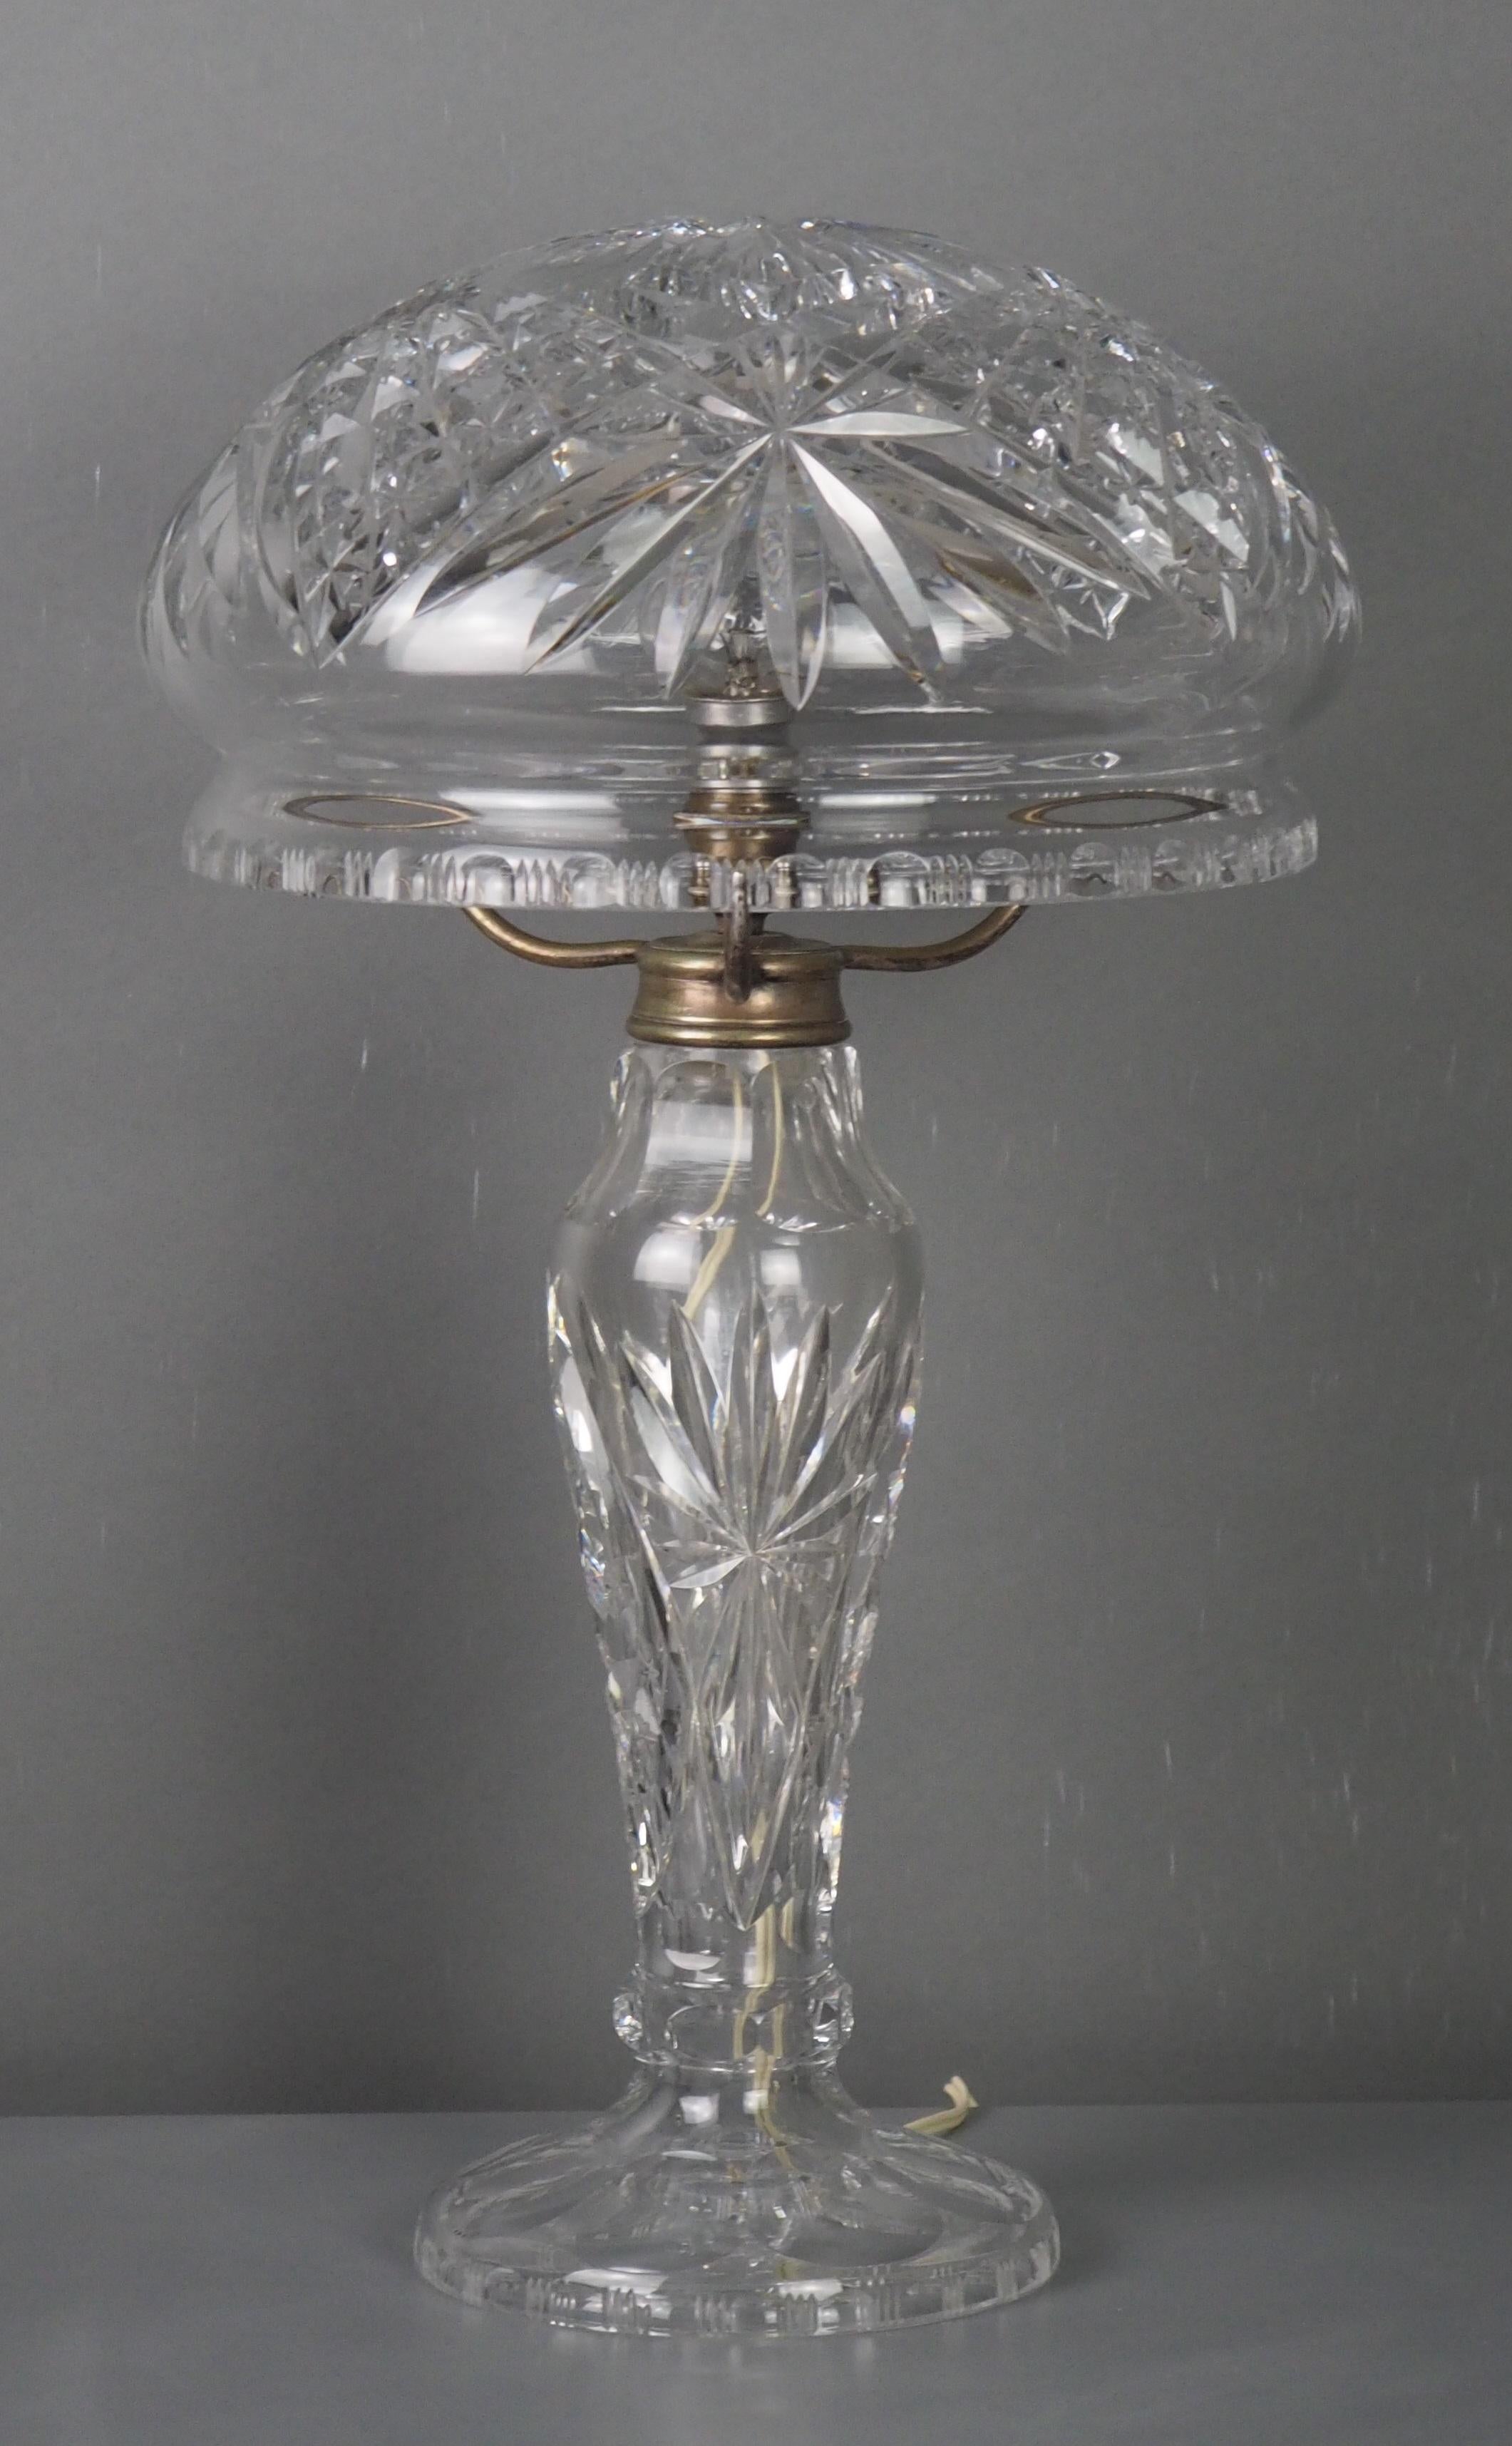 Magnifique lampe de table champignon en cristal taillé d'époque édouardienne, avec abat-jour d'origine et douille de lampe Ediwsan, Royaume-Uni, vers 1900-1910.
Cette lampe est fabriquée en cristal taillé de superbe qualité avec des montures